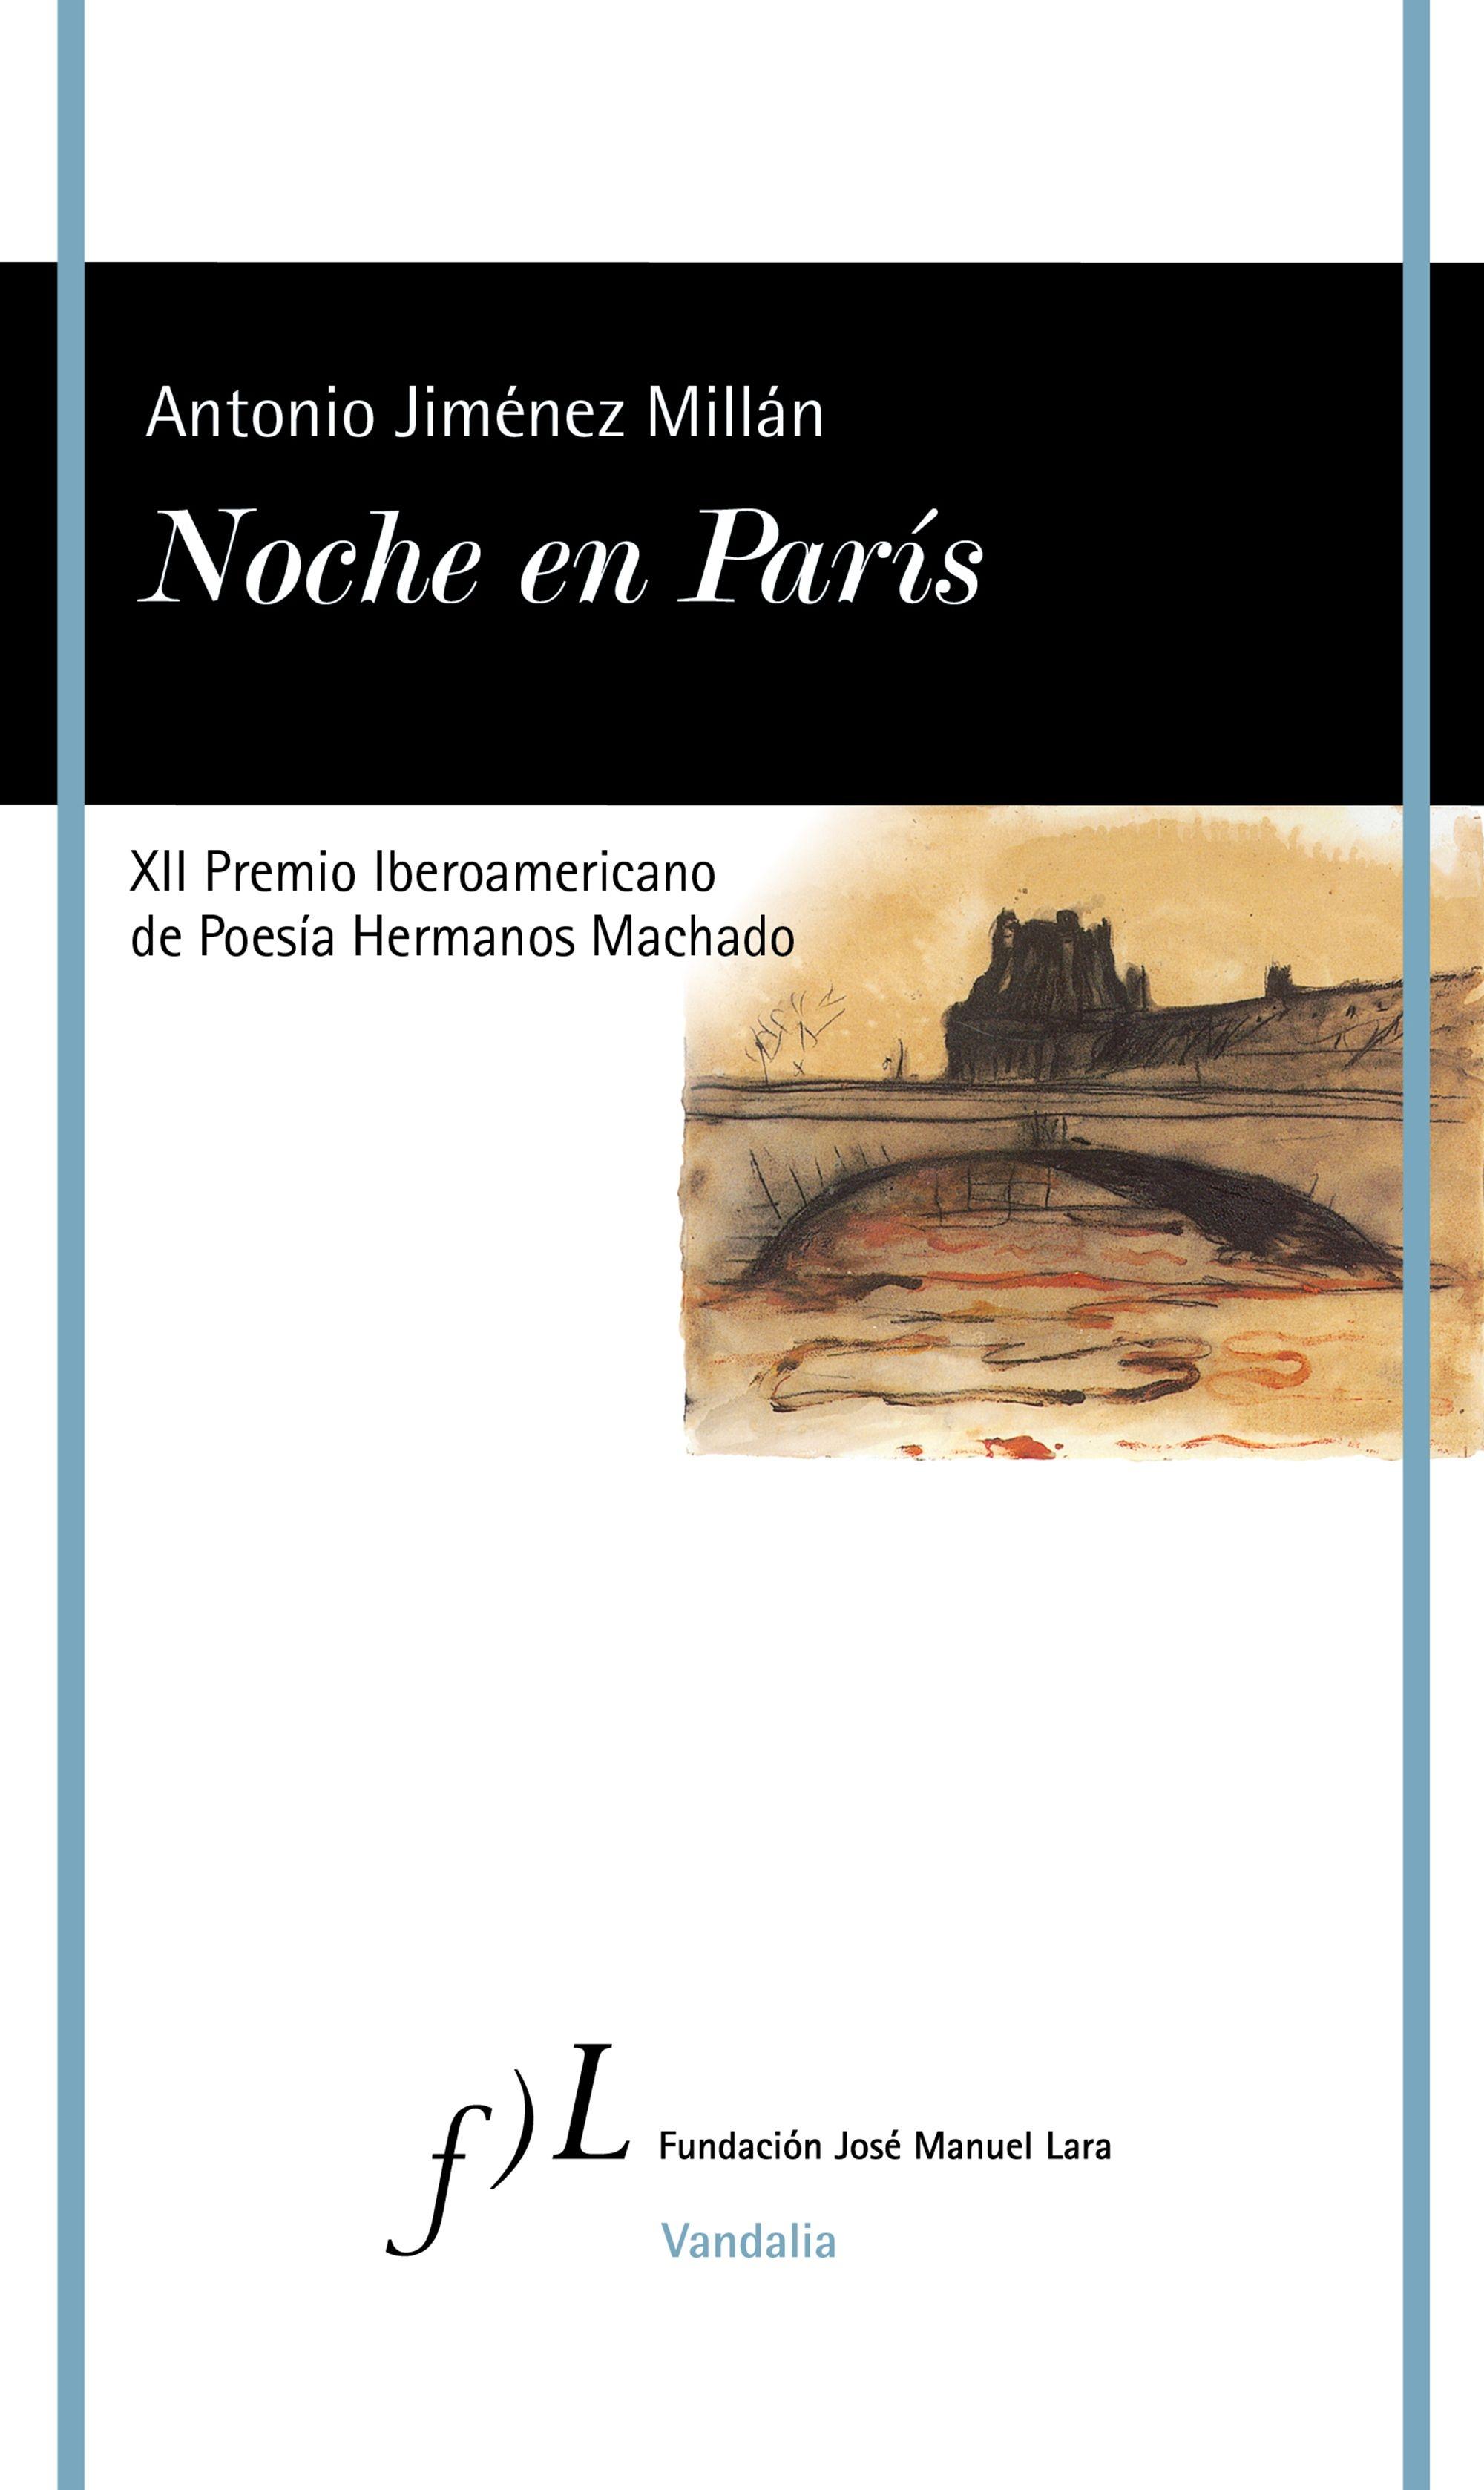 Noche en París "Xii Premio Iberoamericano de Poesía Hermanos Machado". 